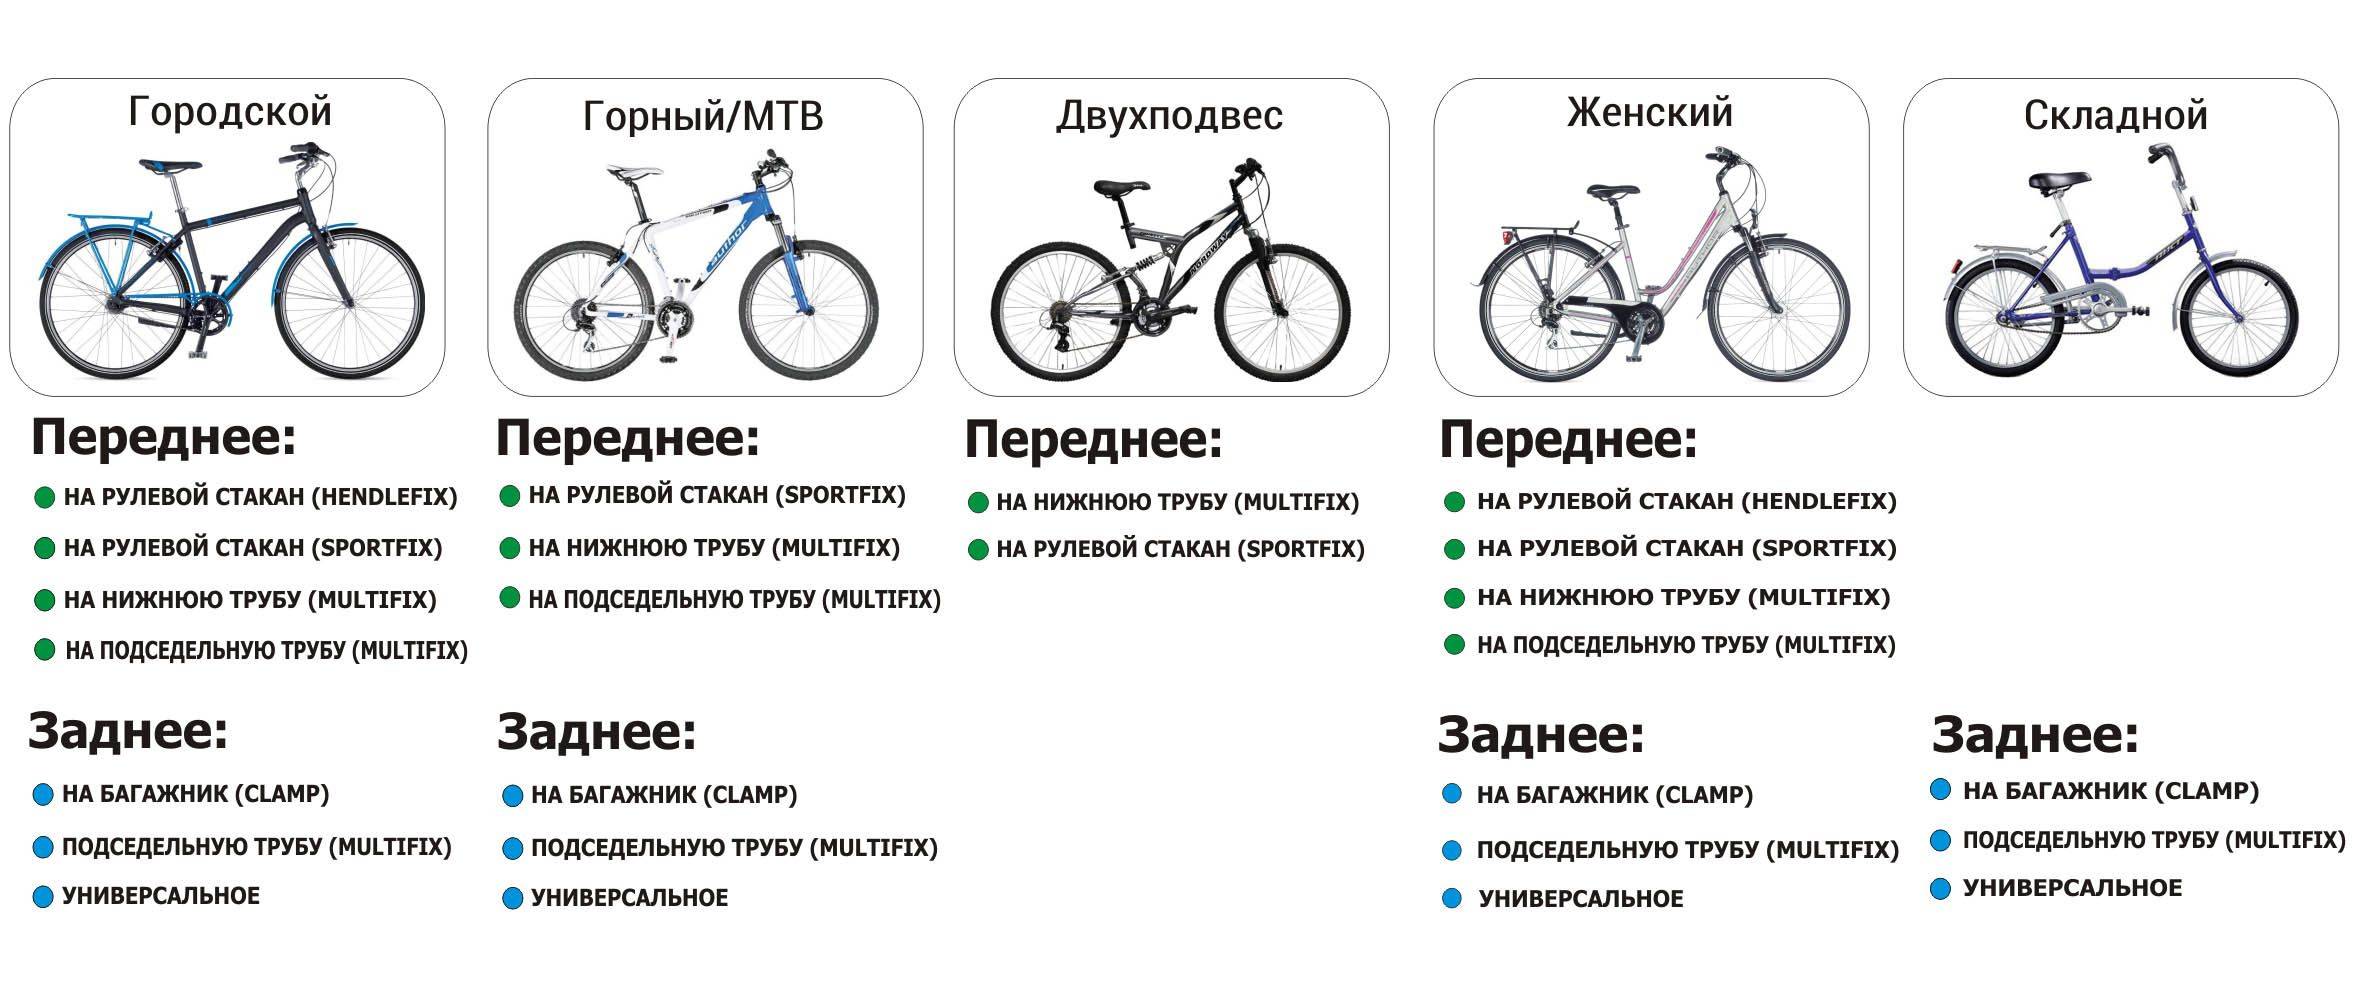 Отличия между горным и дорожным велосипедом